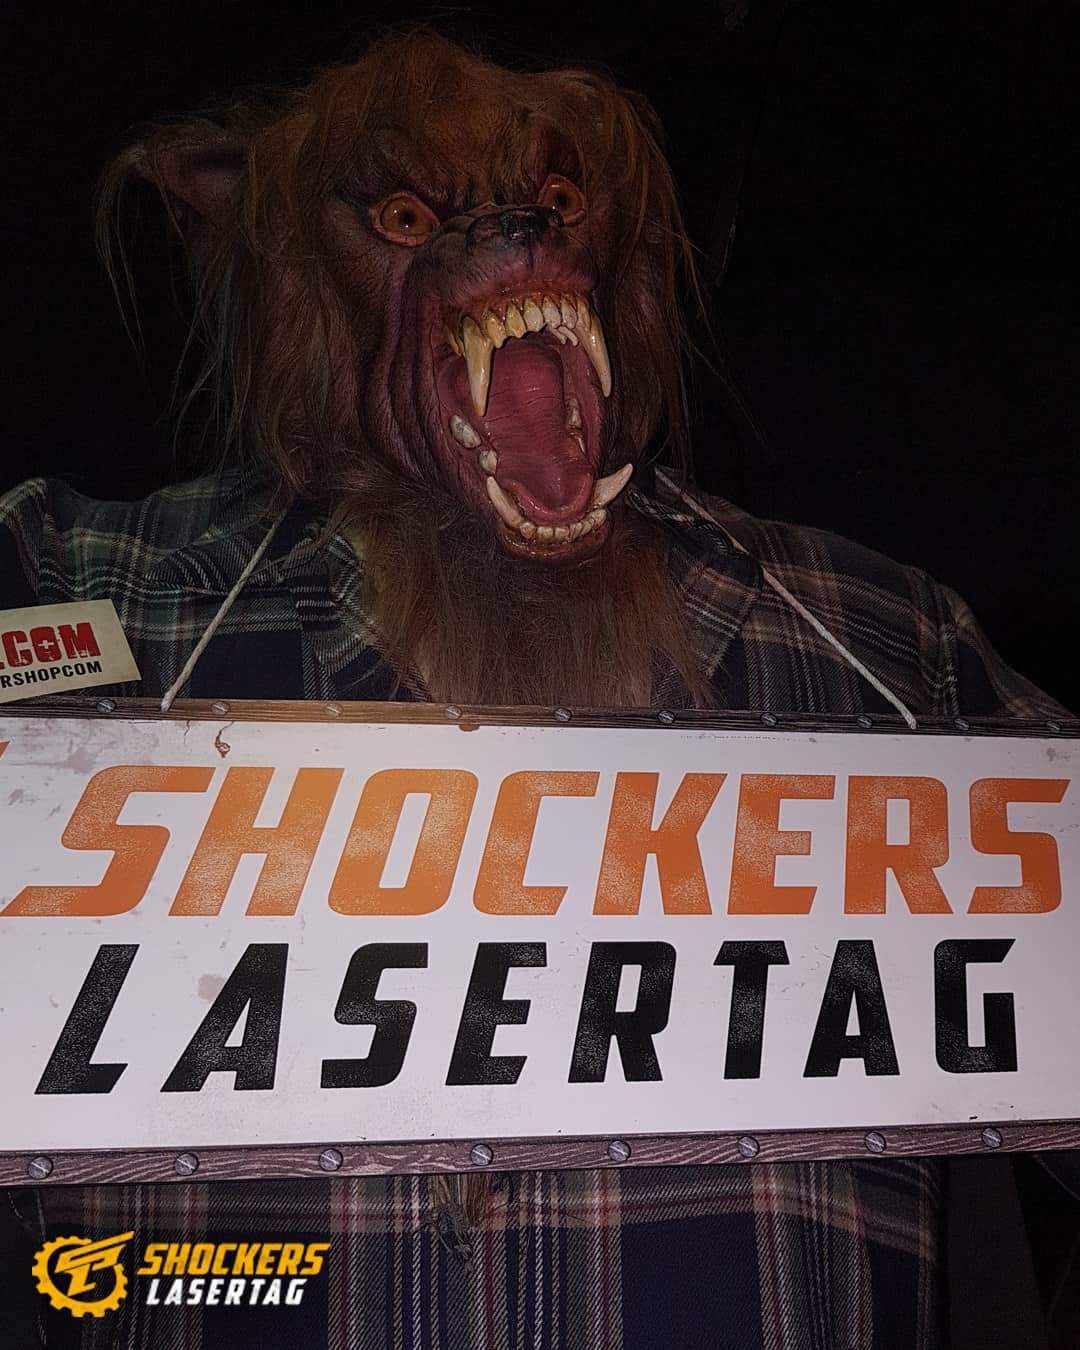 Shockers Lasertag in München